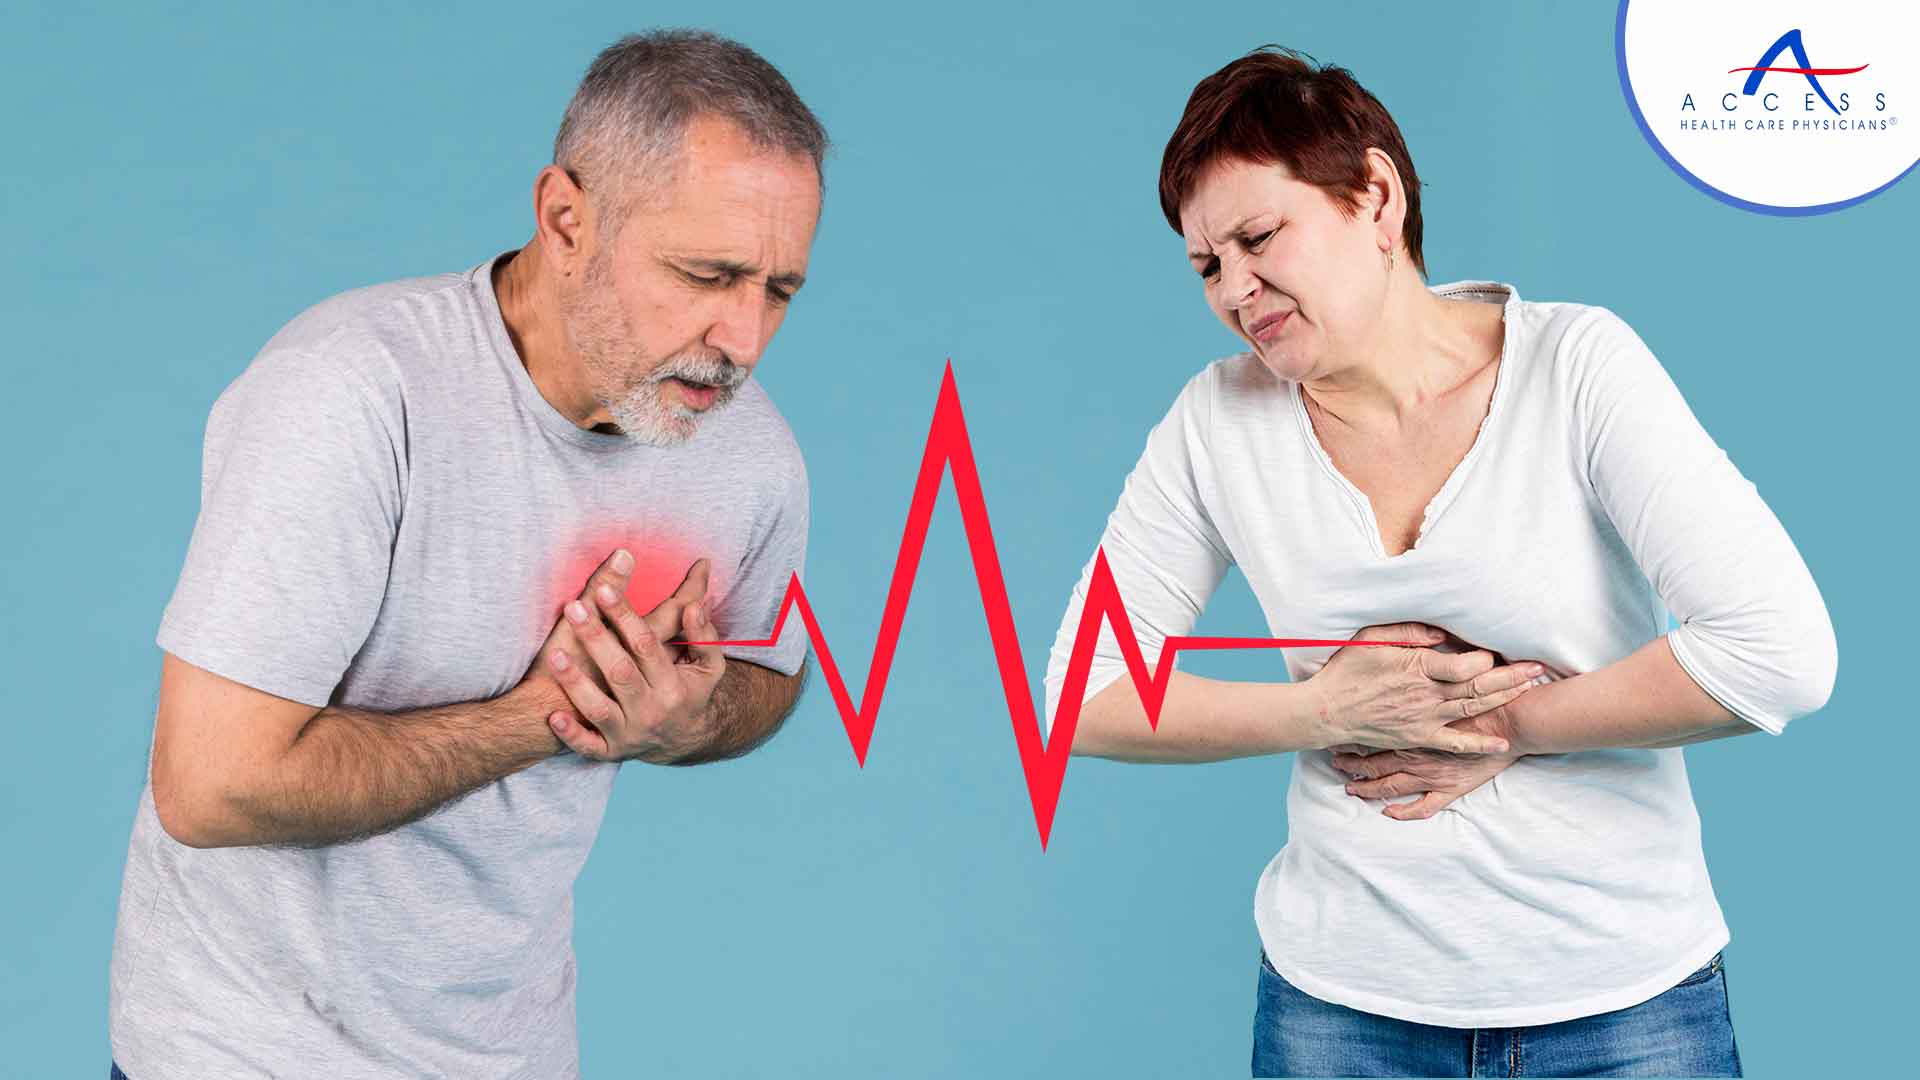 heartburn-vs-heart-attack